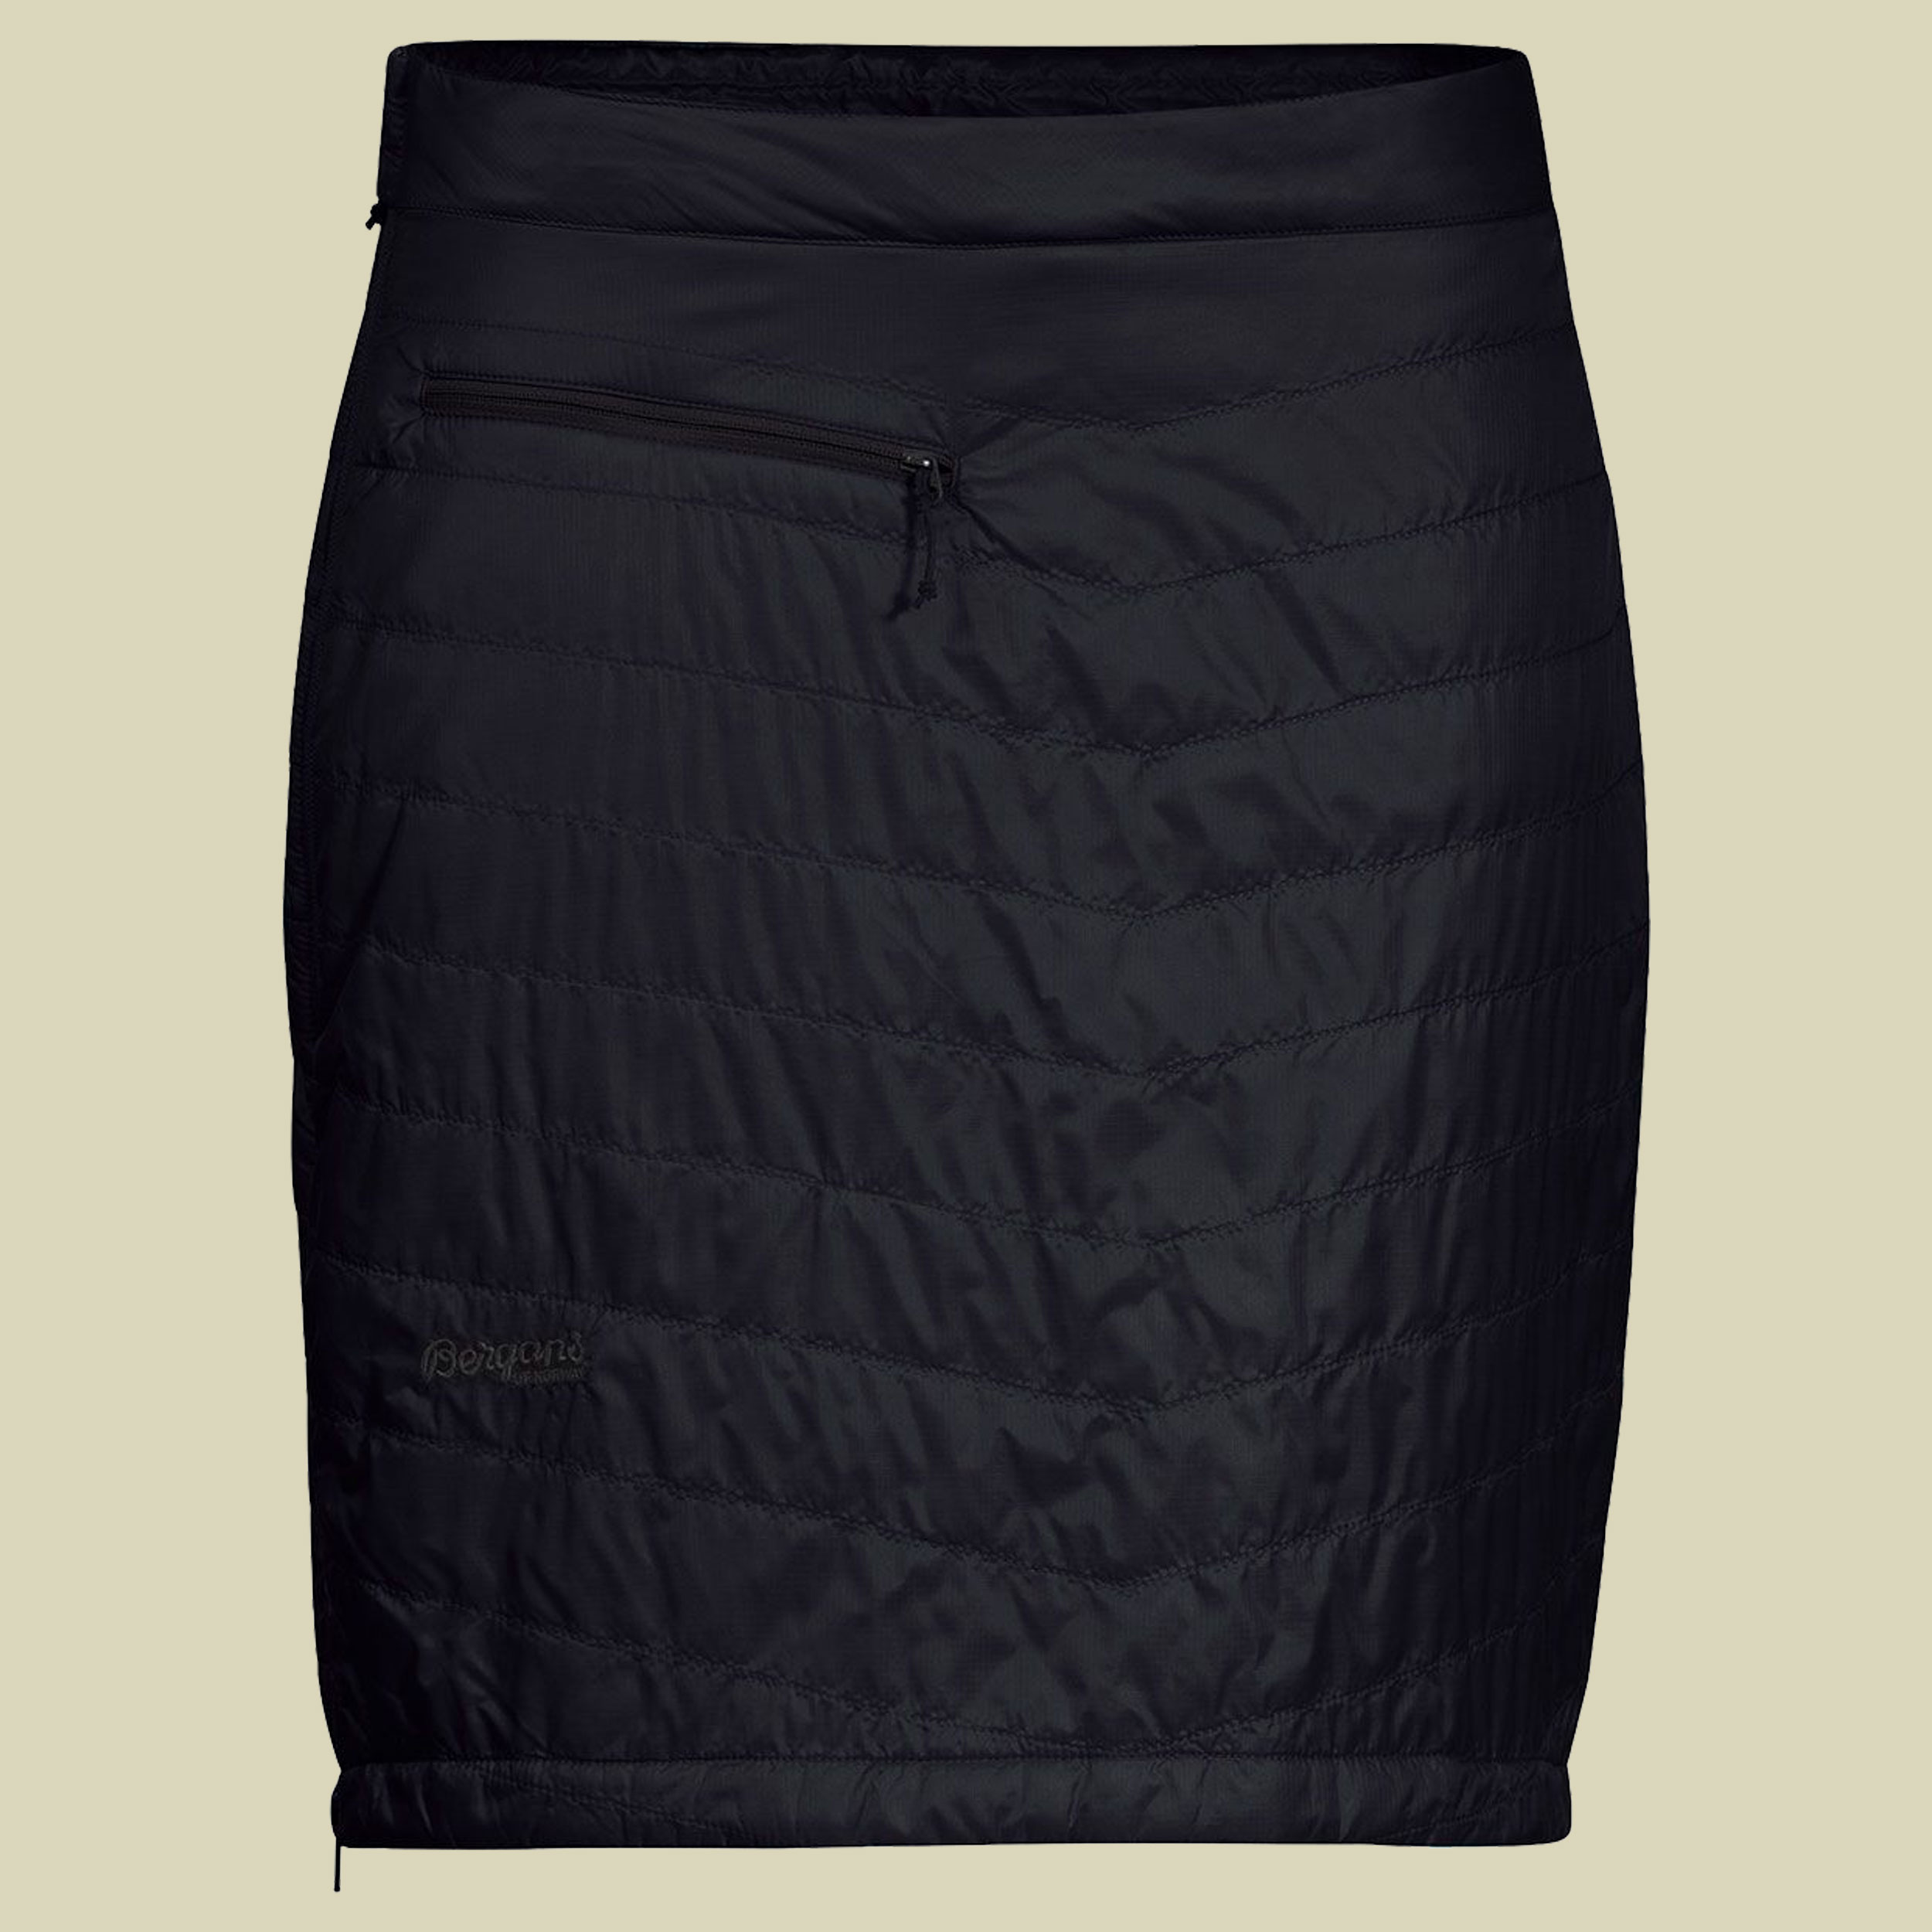 Roros Insulated Skirt